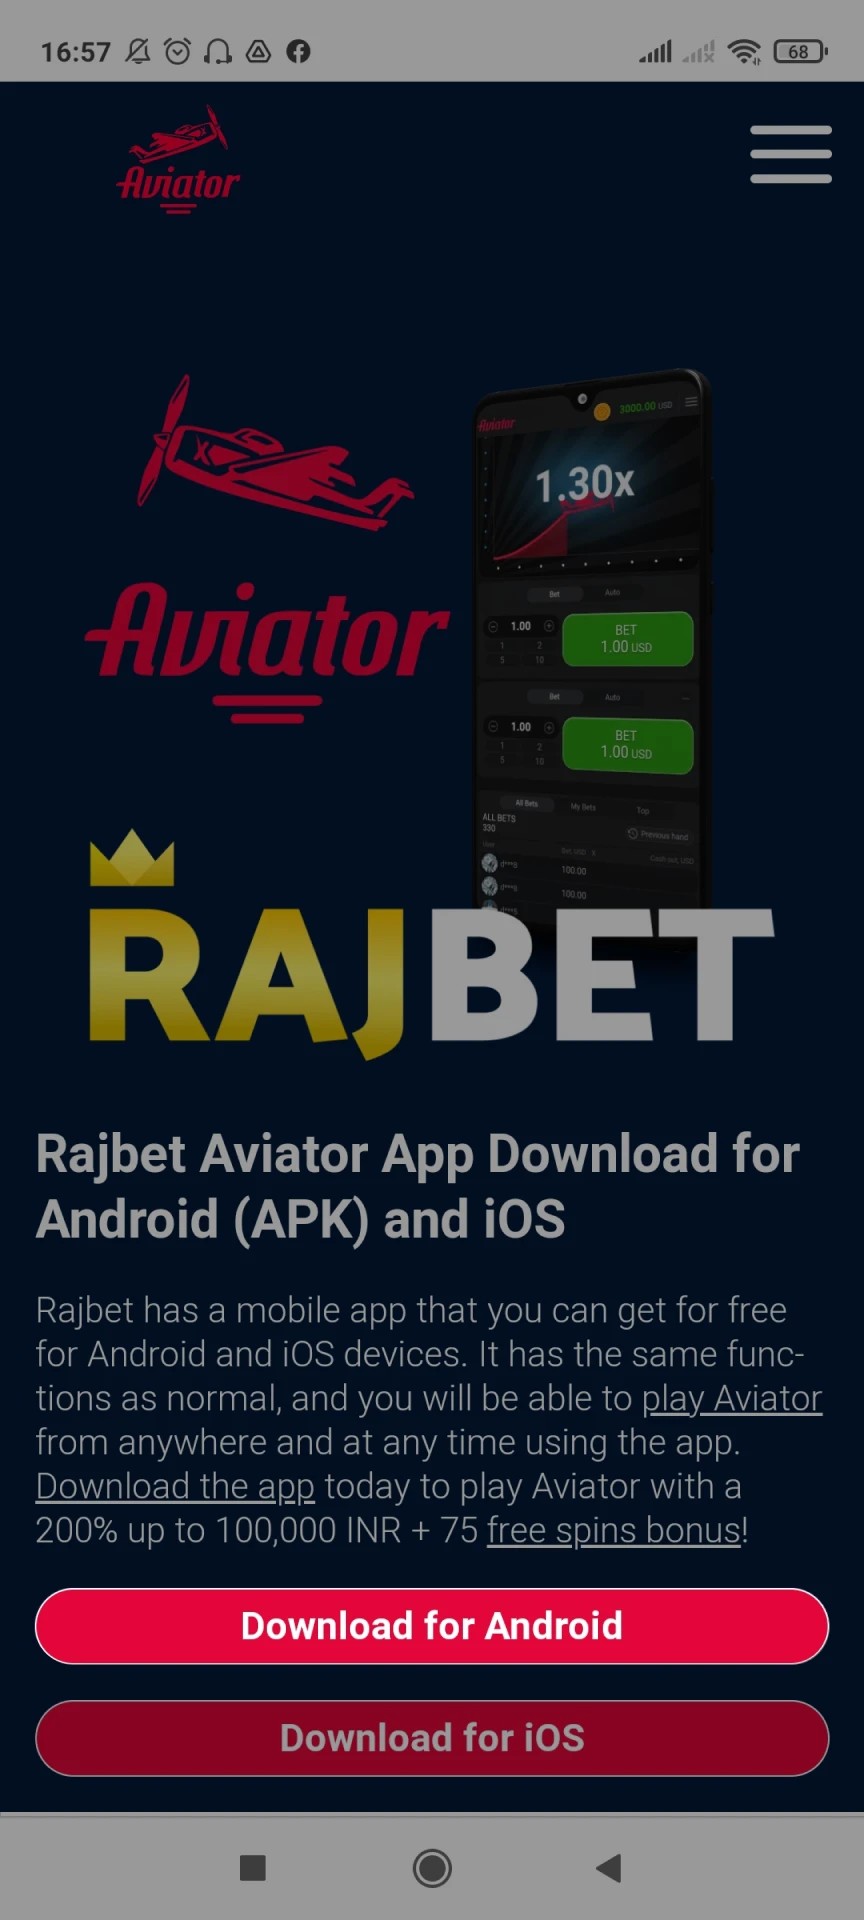 Vá para a página inicial do Rajbet para baixar o aplicativo para Android.